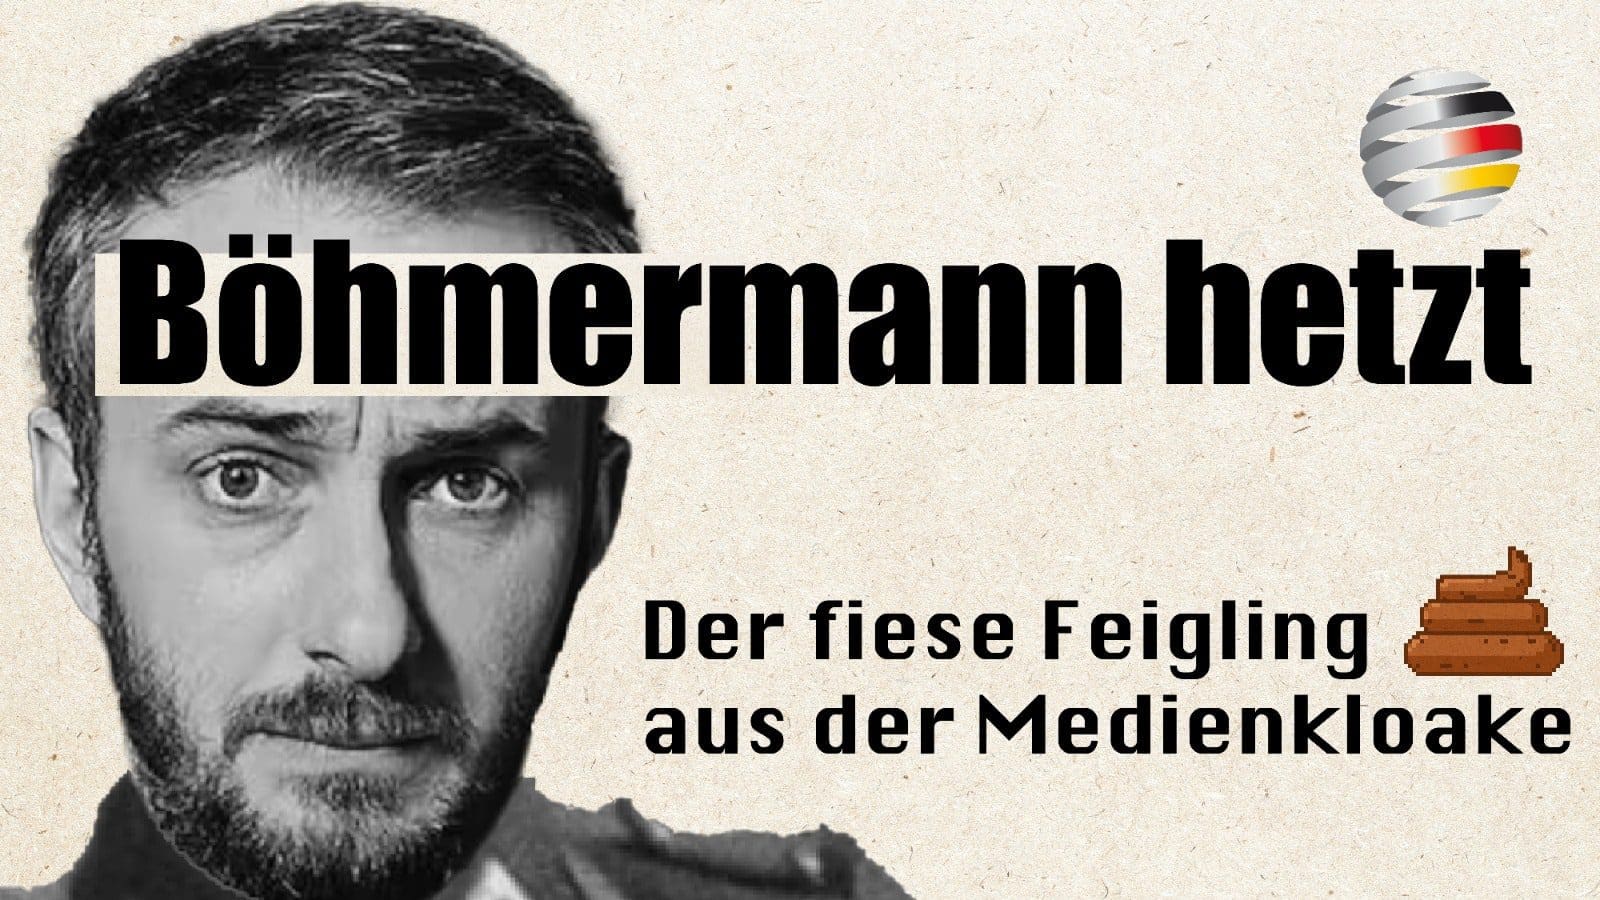 bohmermann-hetzt-der-fiese-feigling-aus-der-medienkloake